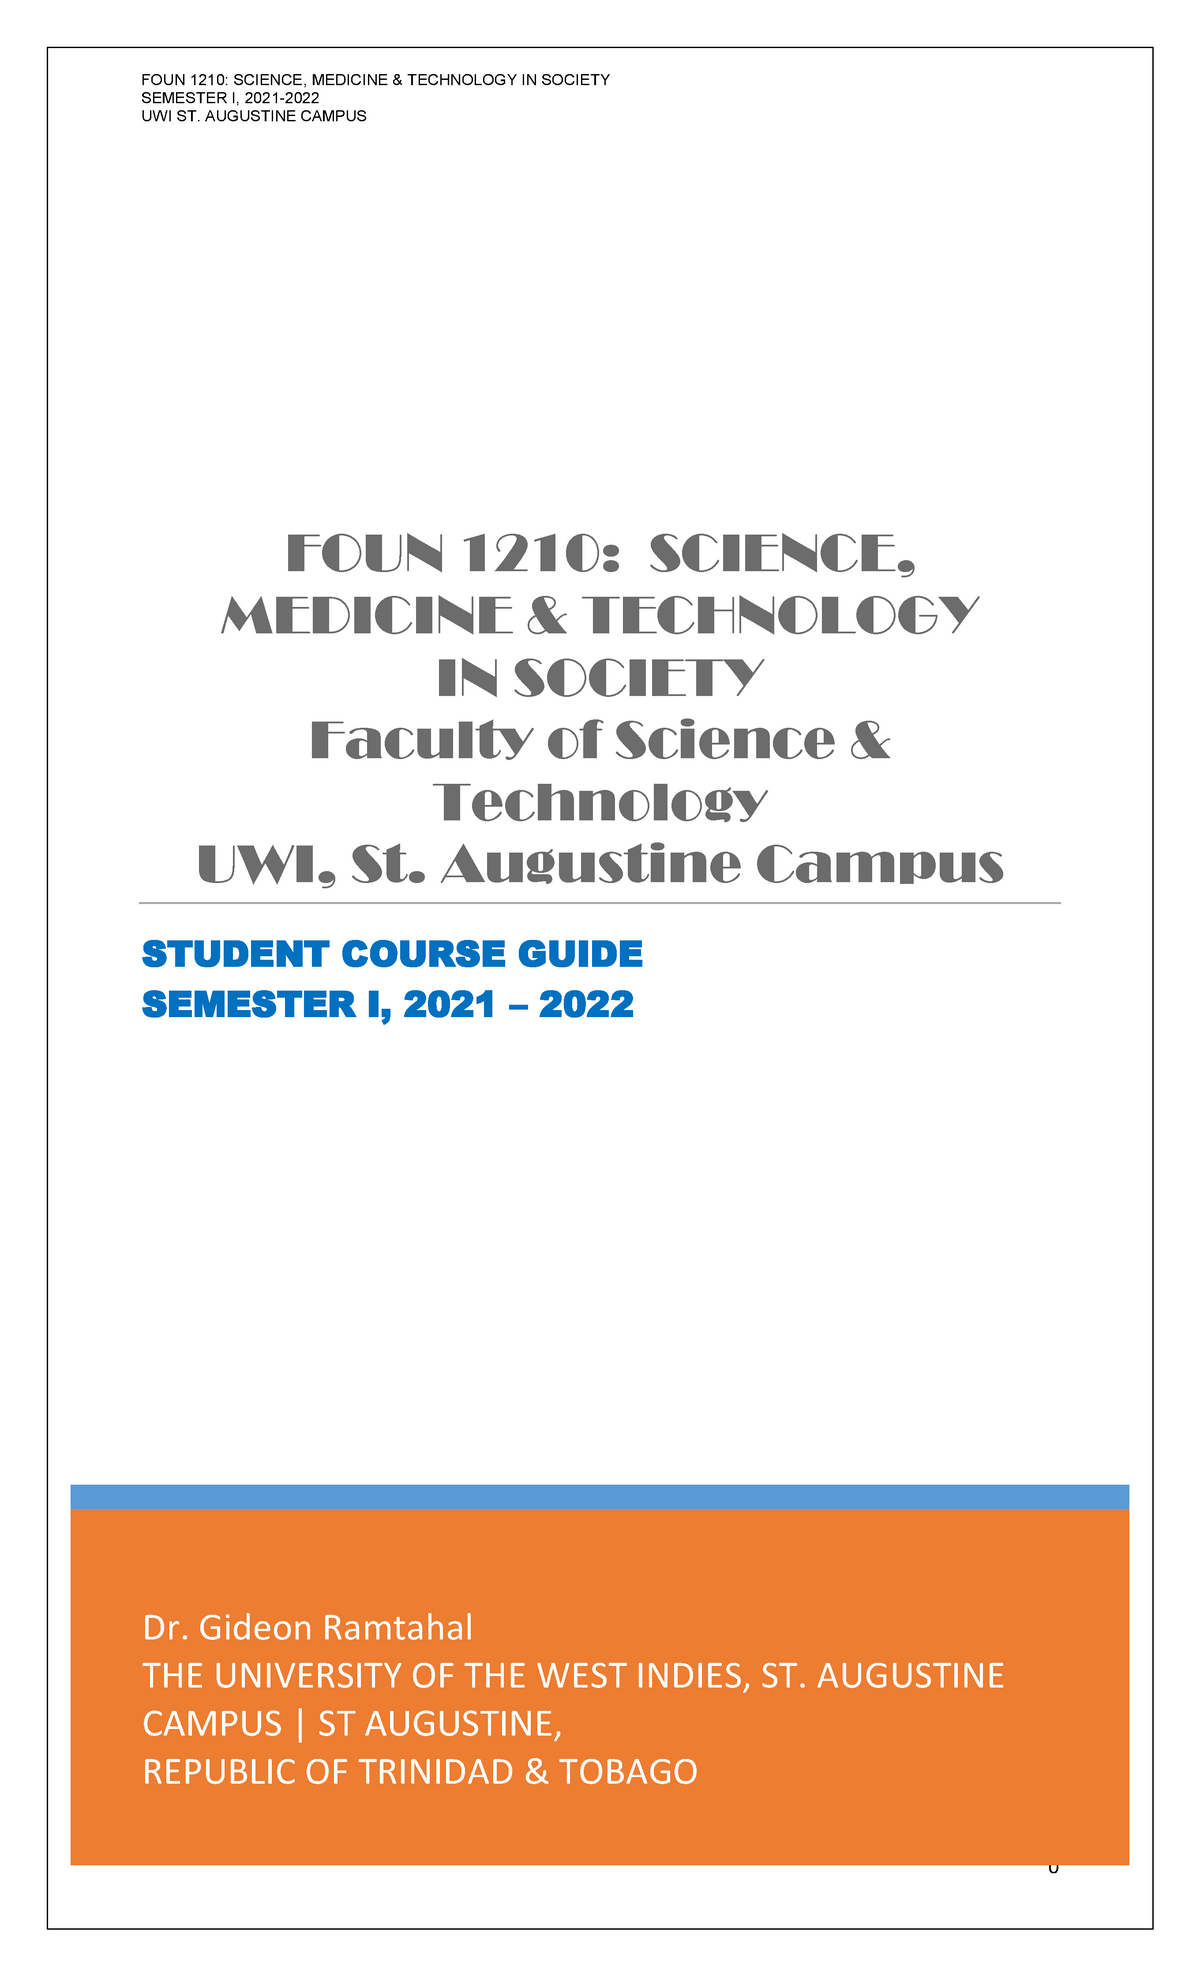 Foun 1210 Student Course Guide Sem 1 2021 -2022 Draft - Introduction - Studocu